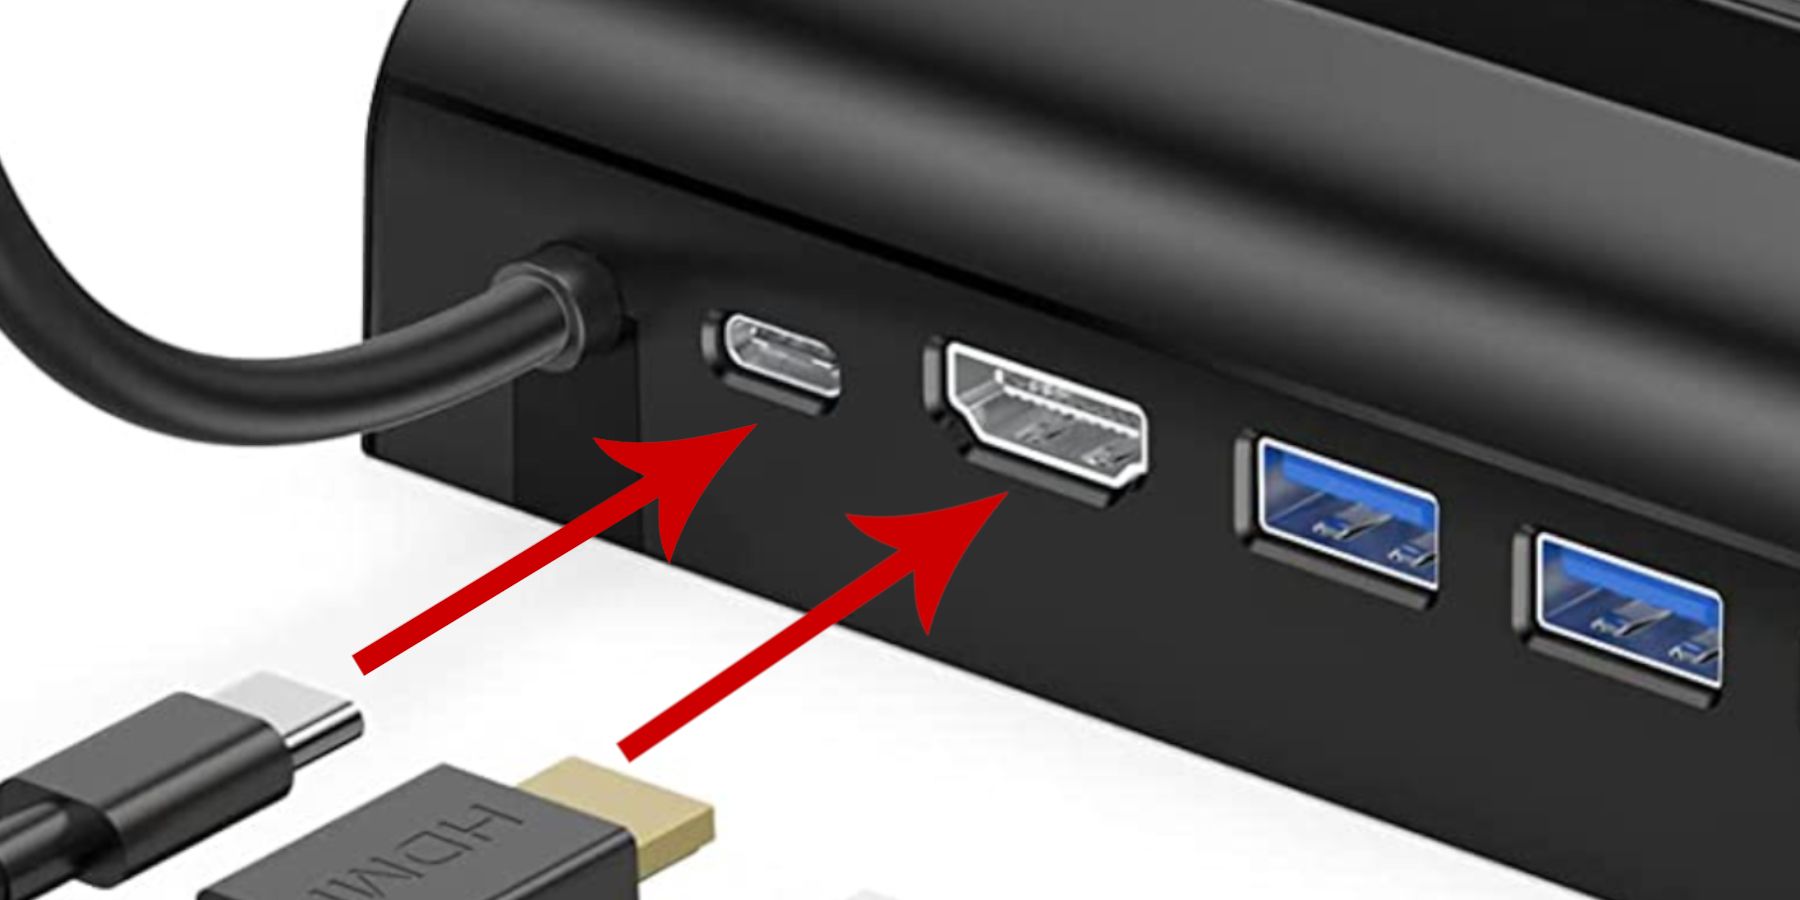 Estação de acoplamento Steam Deck Slots HDMI e USB C